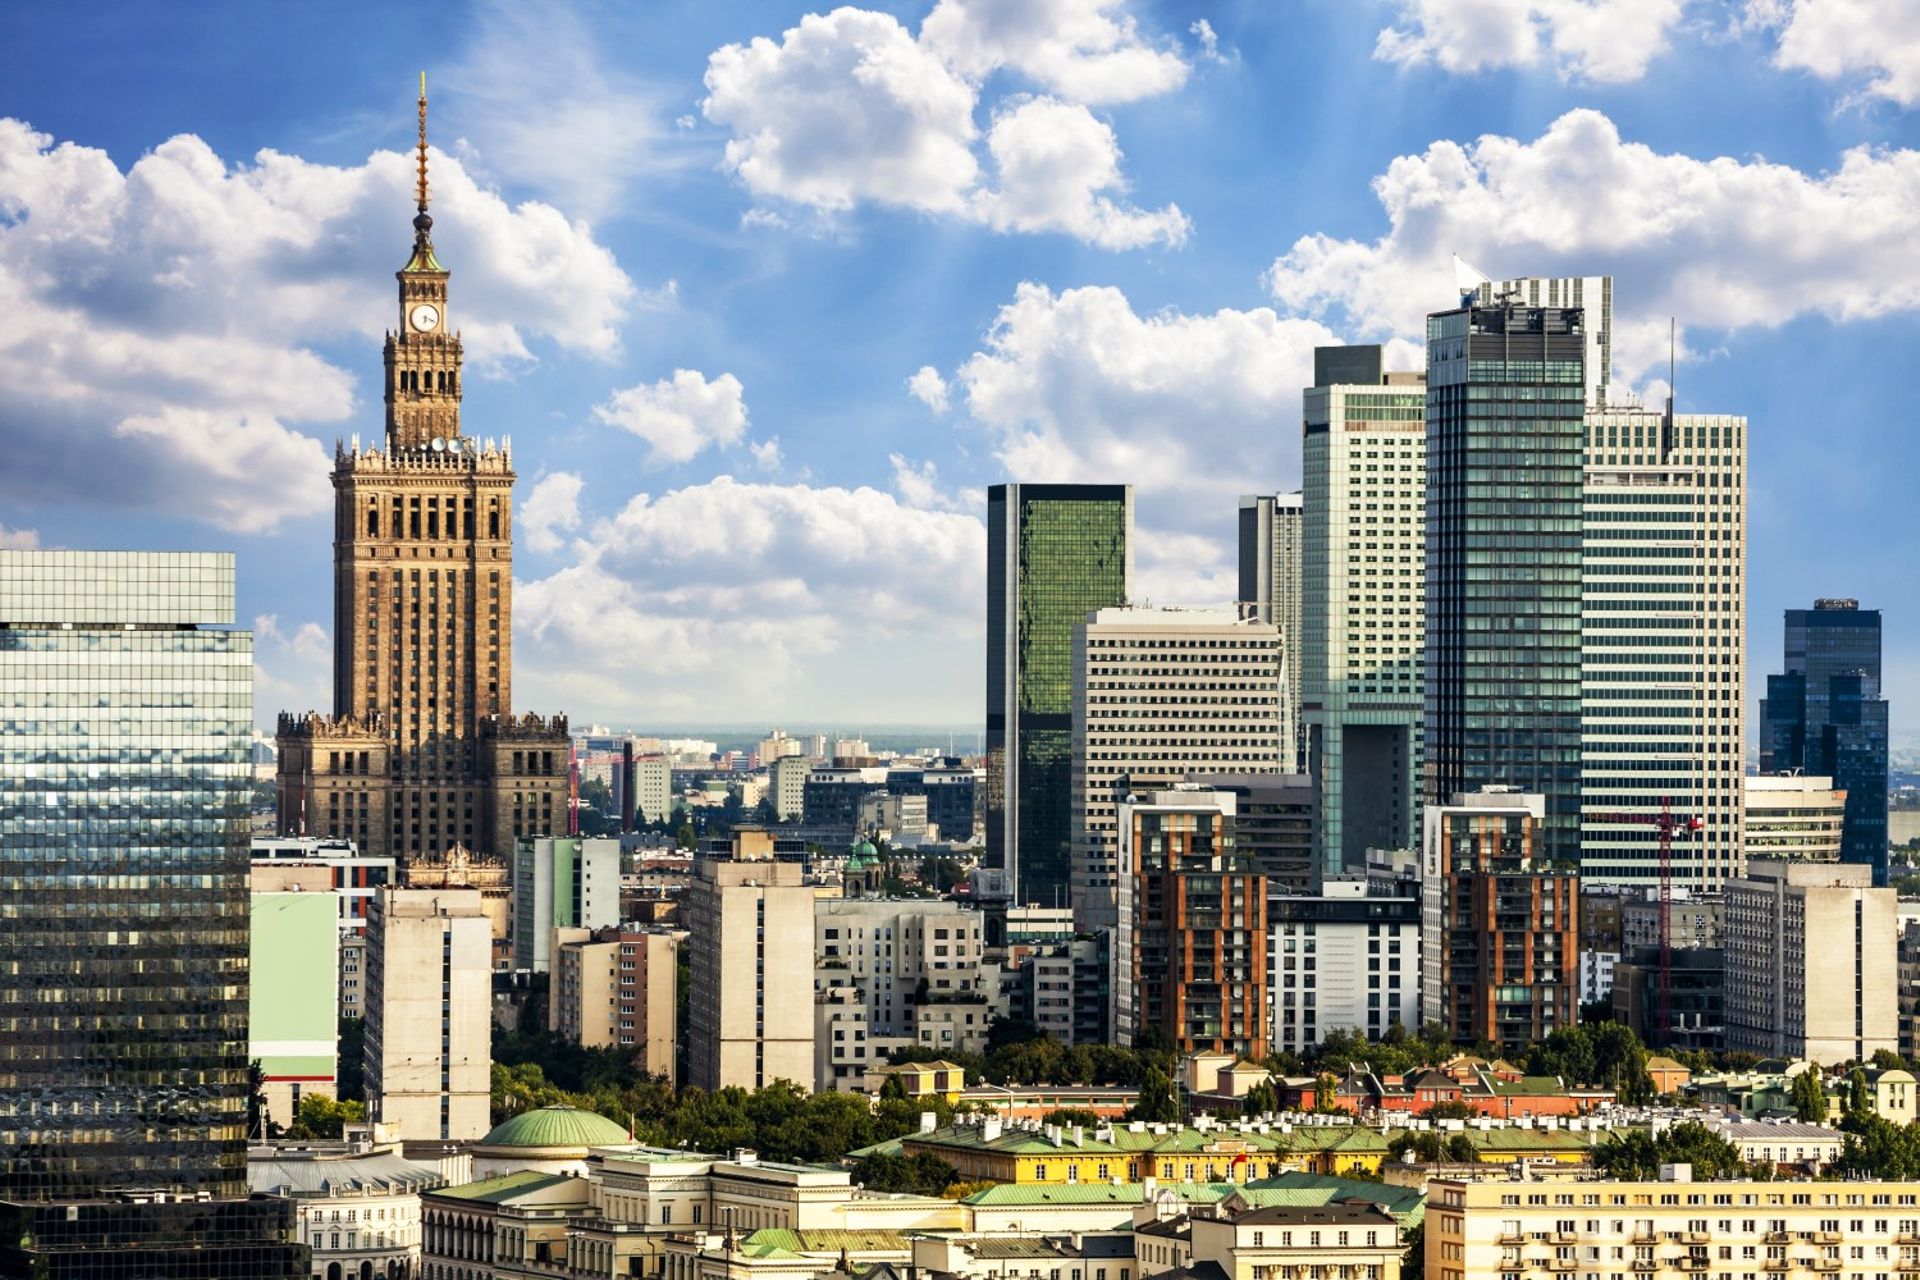  Zapotrzebowanie na biura w Polsce większe od podaży